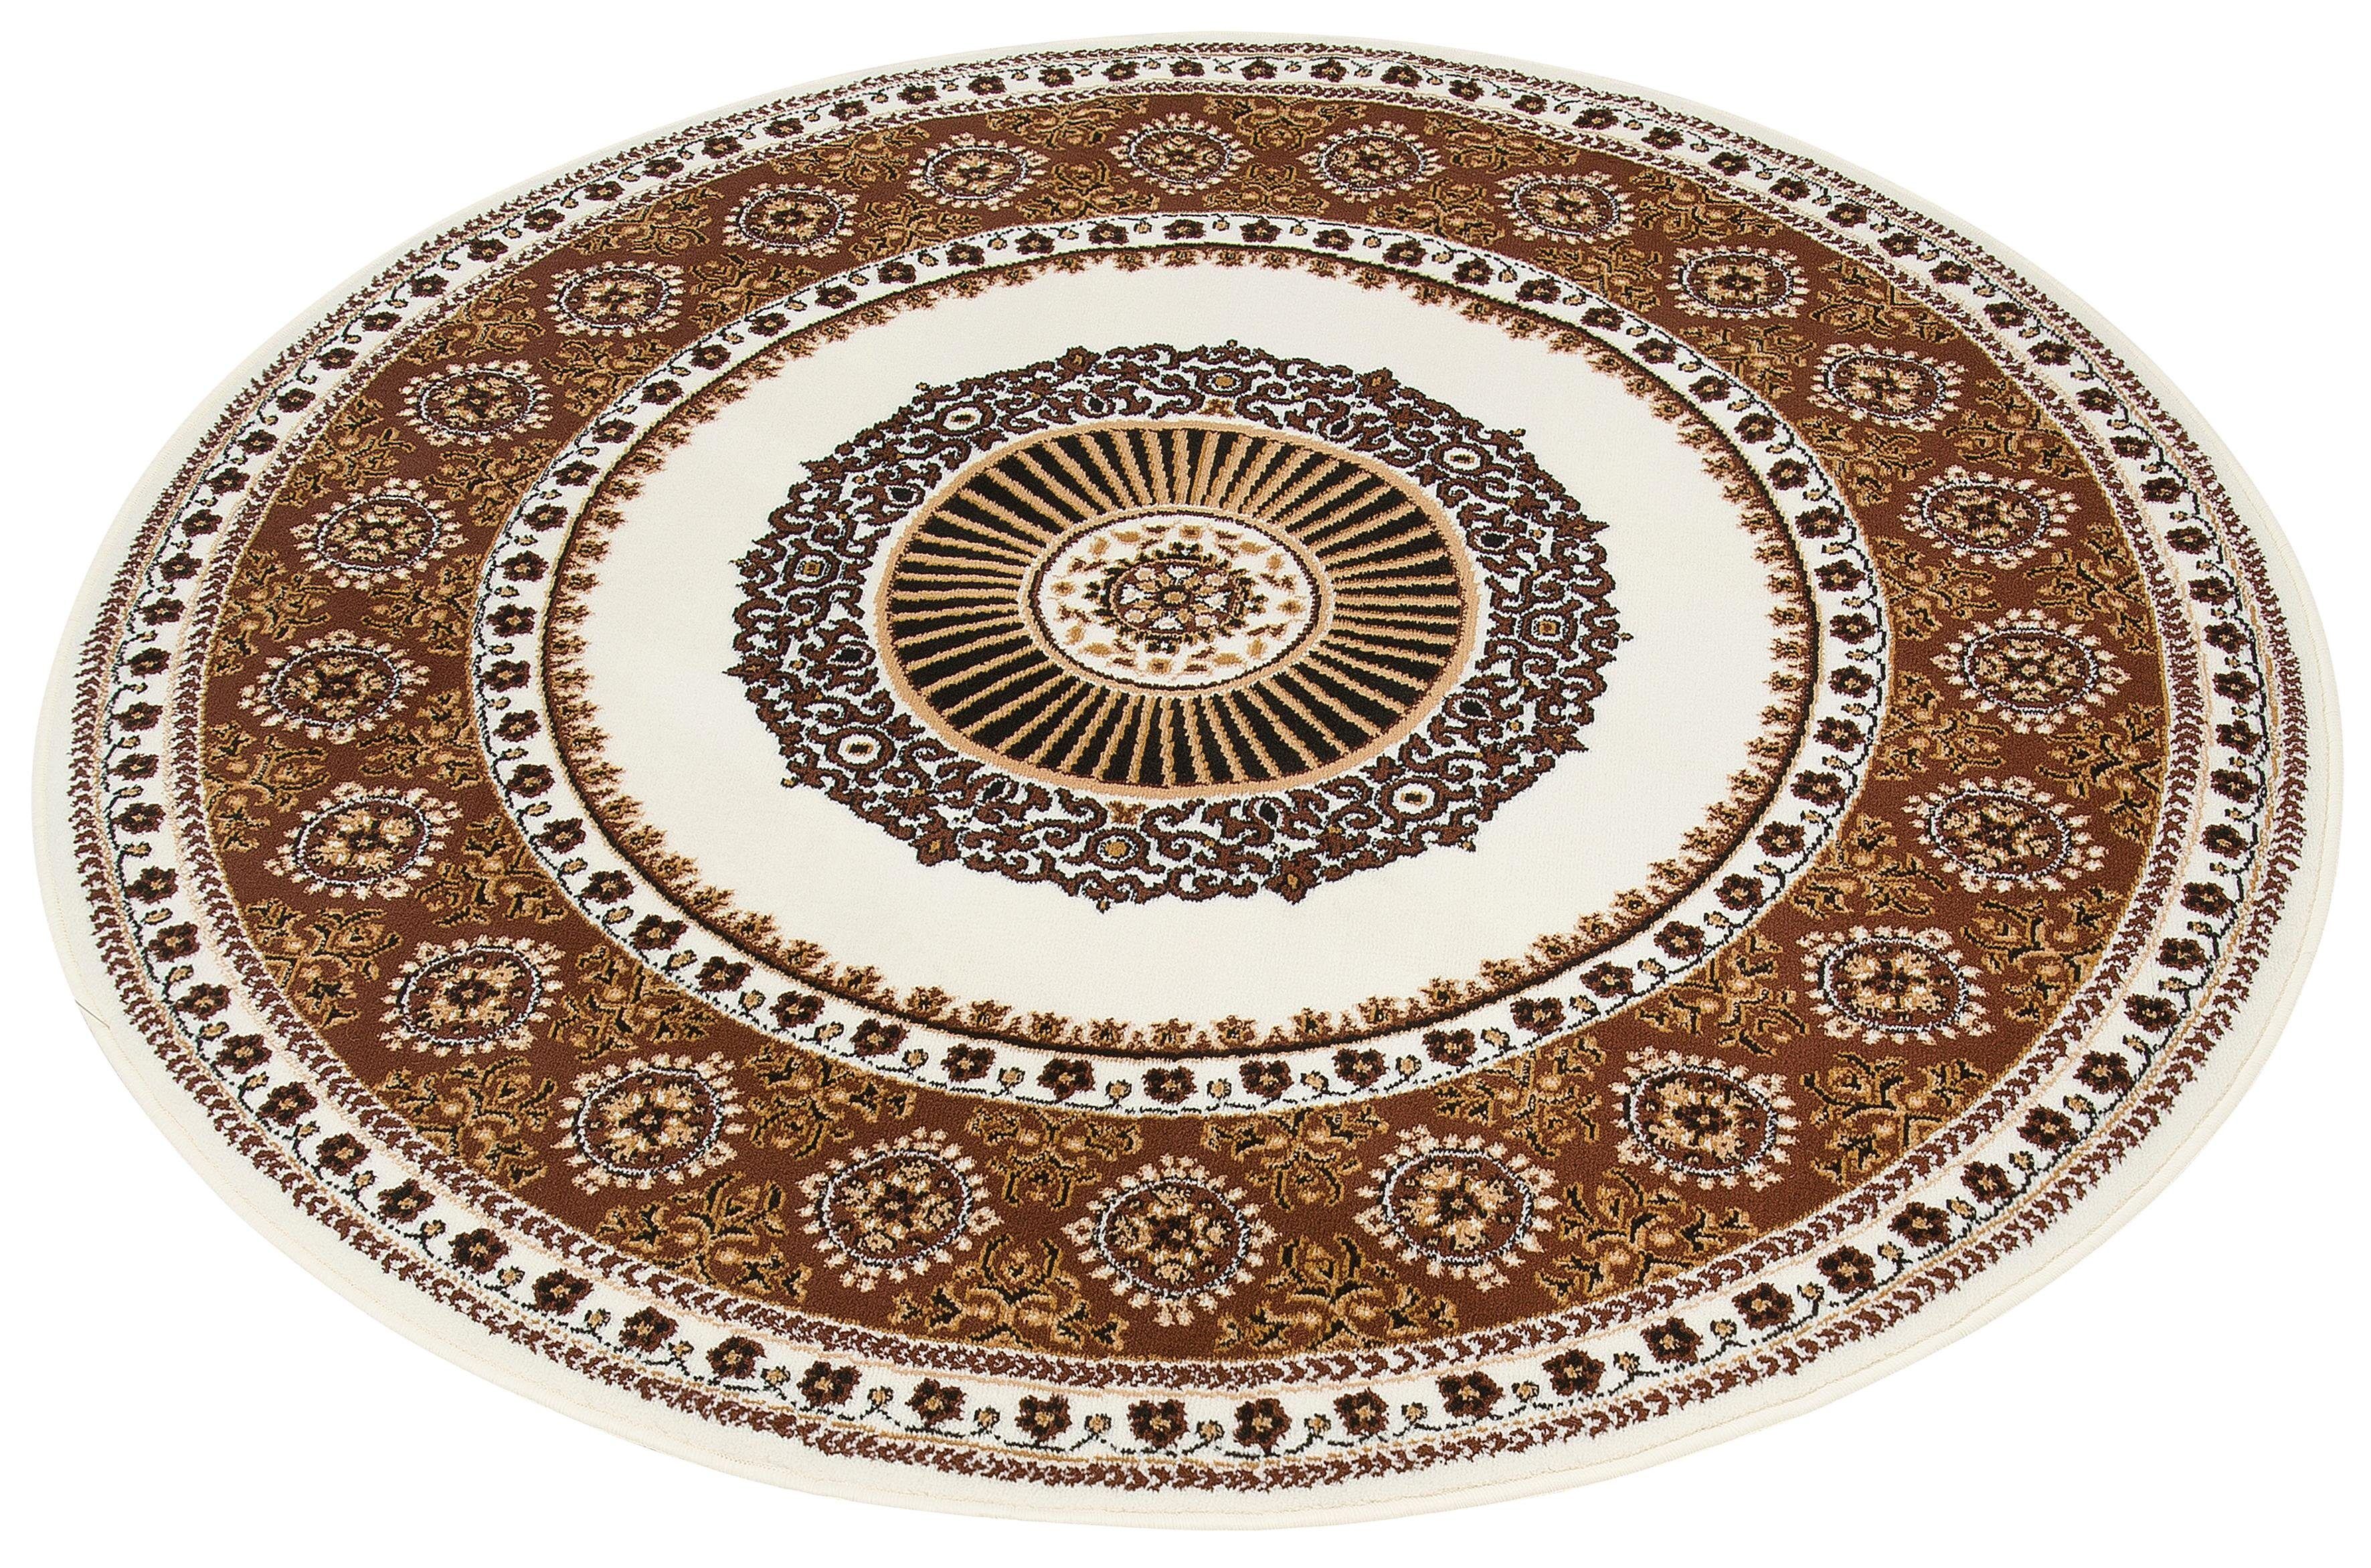 DELAVITA Teppich »Shari«, rund, 7 mm Höhe, Orient - Dekor, Wohnzimmer beige Größe 10 (Ø 190 cm) 9 (Ø 140 cm)